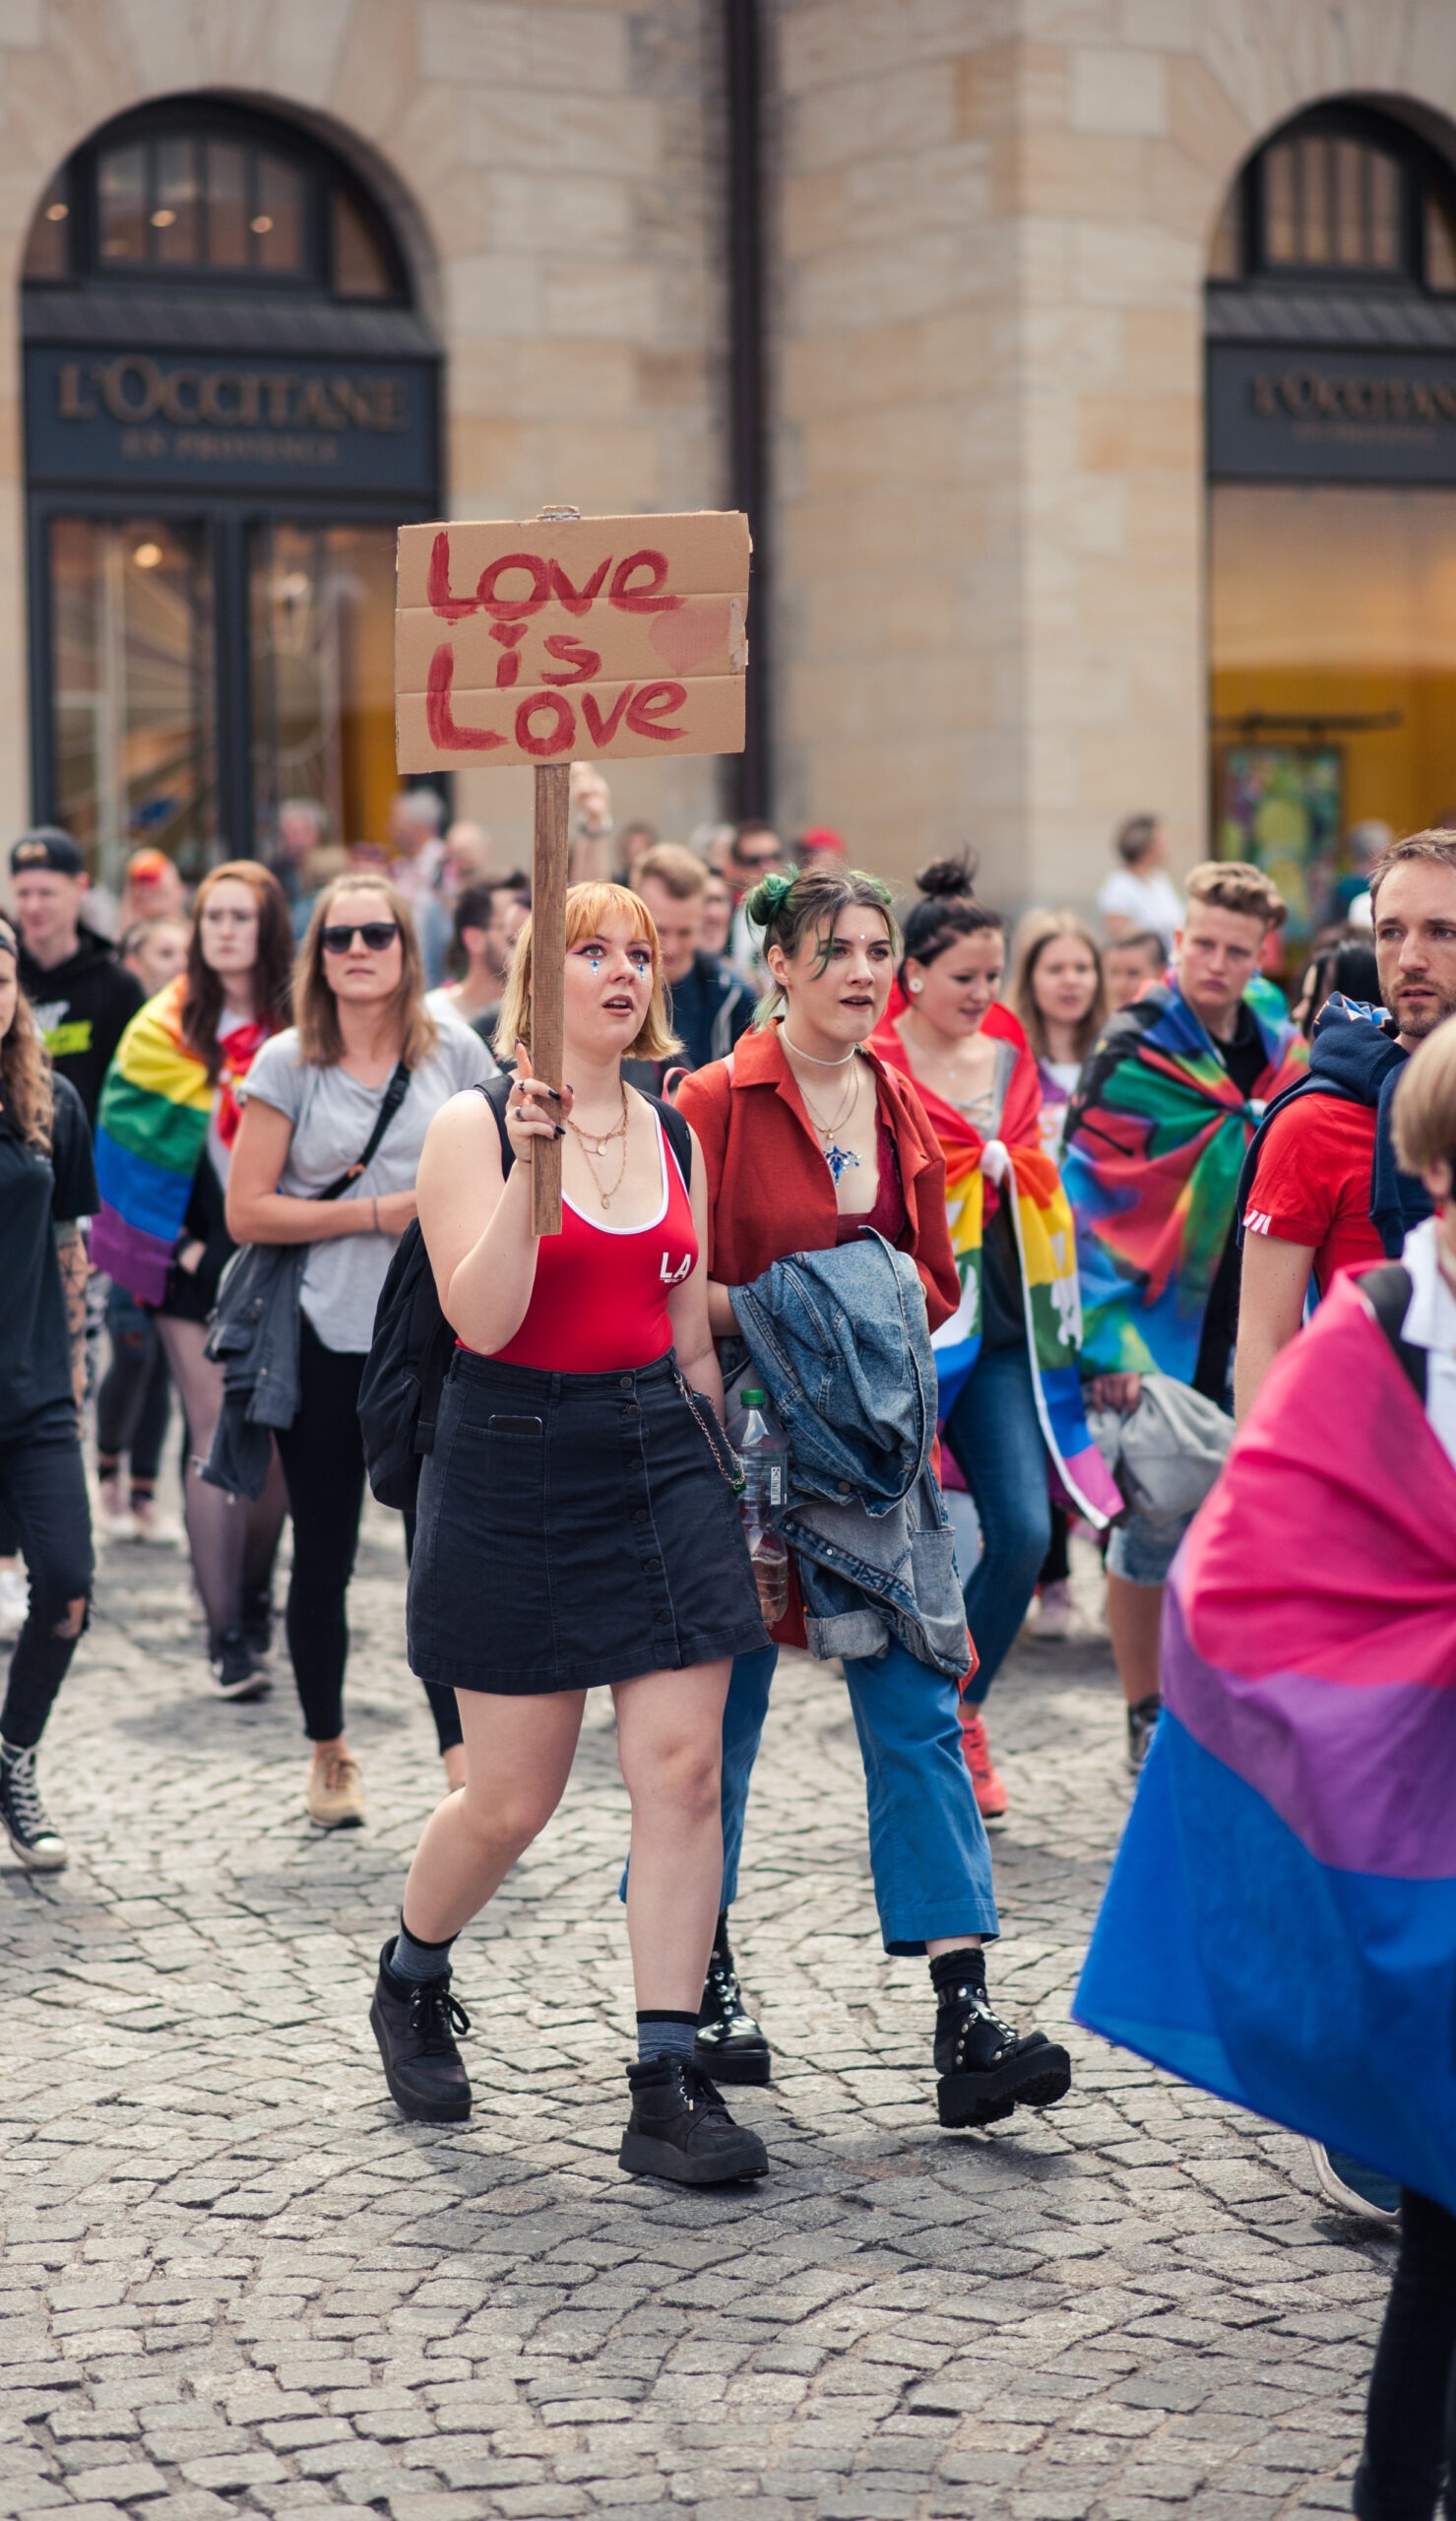 Zwei Personen bei der Demo 2019 mit einem Schild mit der Aufschrift "Love is love"